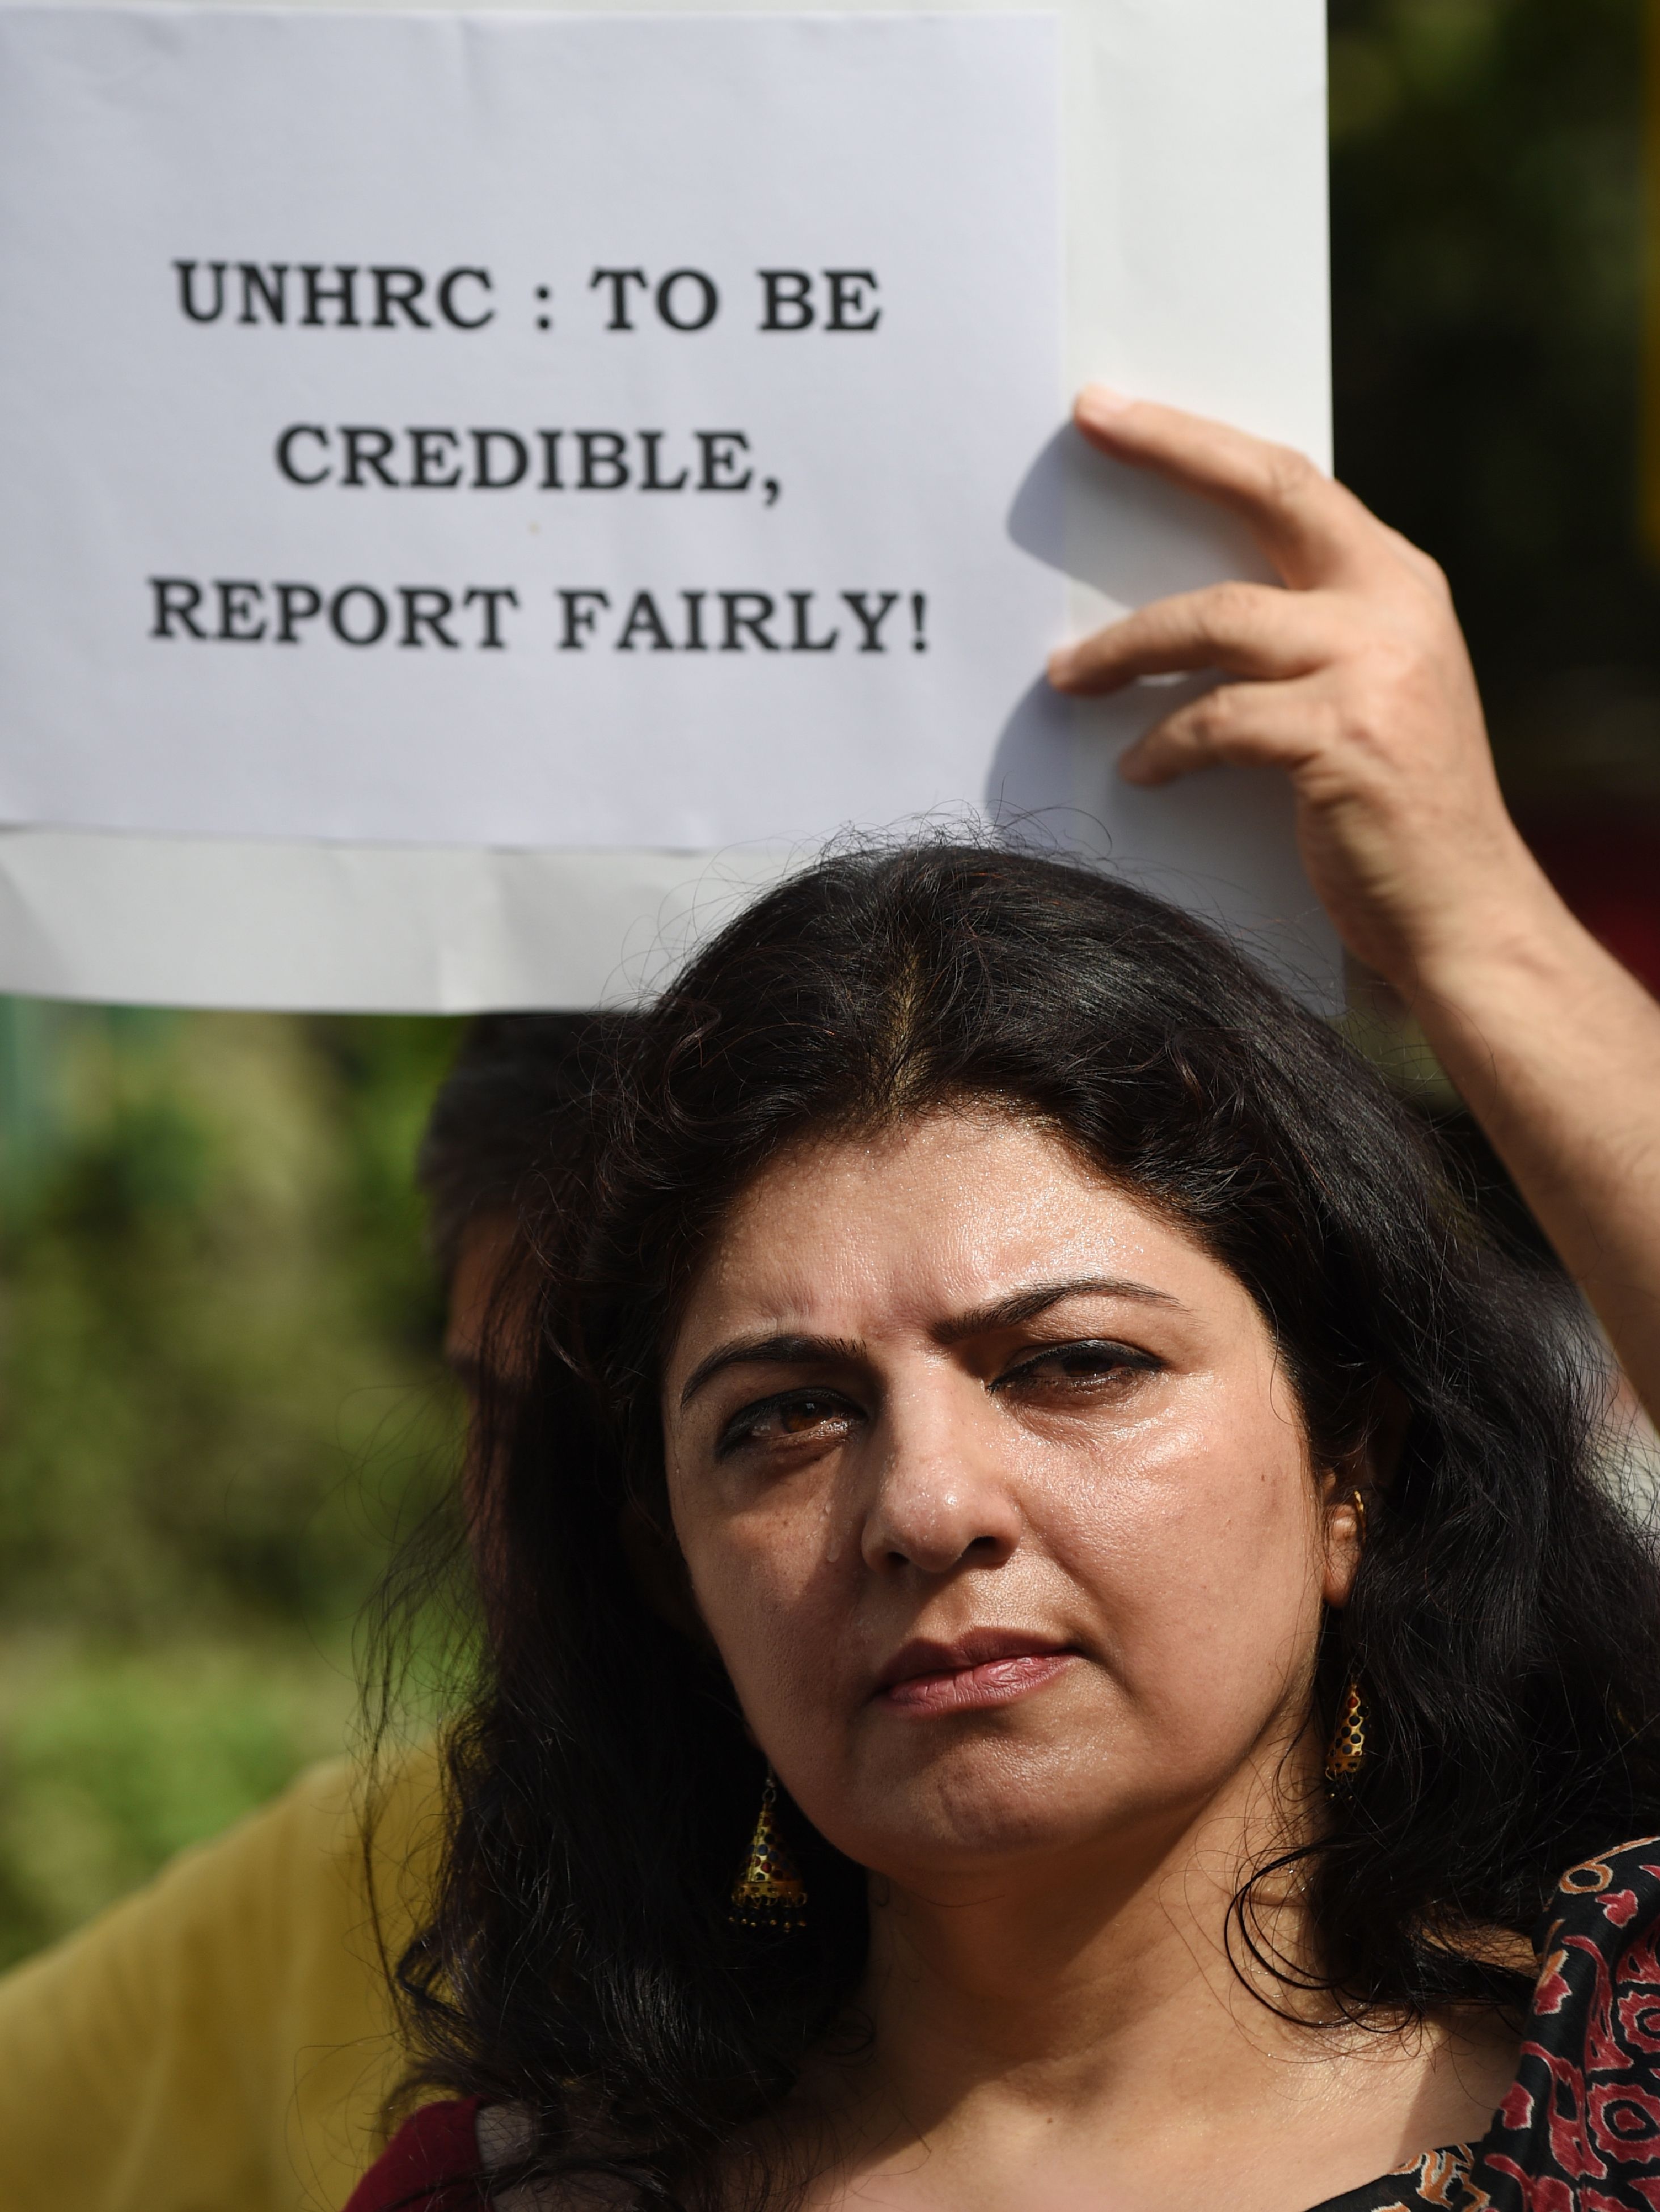 سيدة هندية تشارك فى مظاهرات ضد تقرير أممى حول كشمير